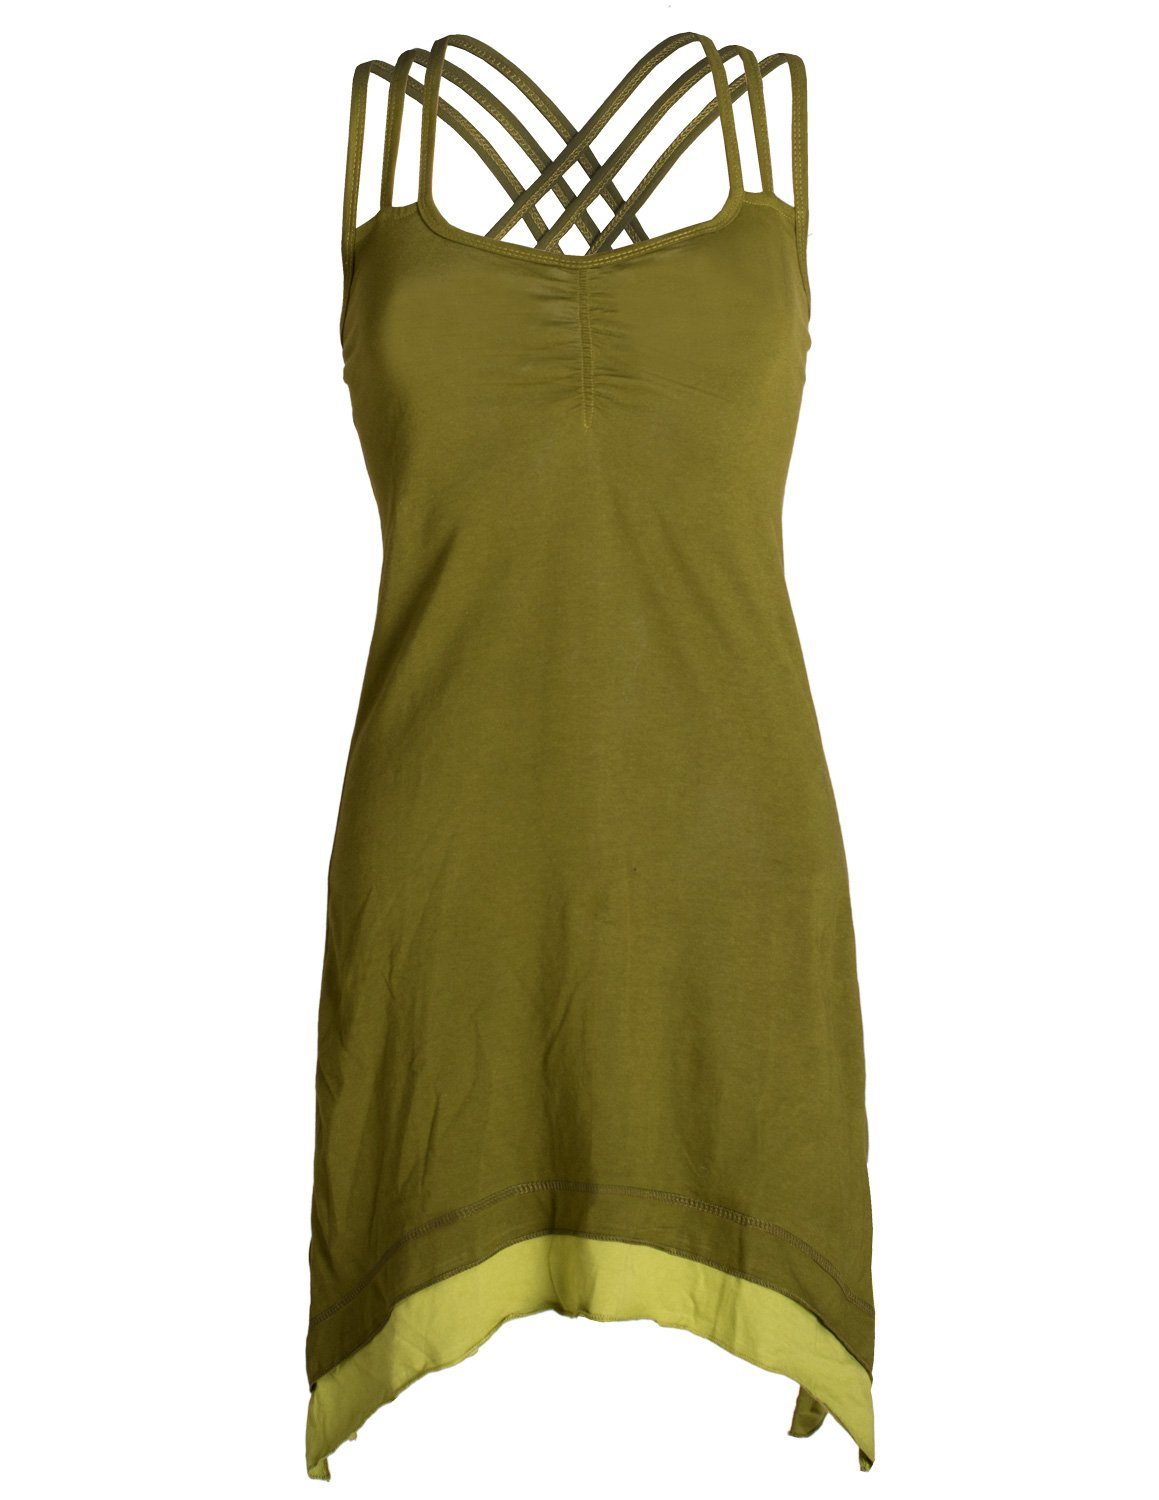 Vishes Sommerkleid Lagenlook Trägerkleid Organic Cotton mit Zipfeln Elfen, Hippie, Boho Style olive